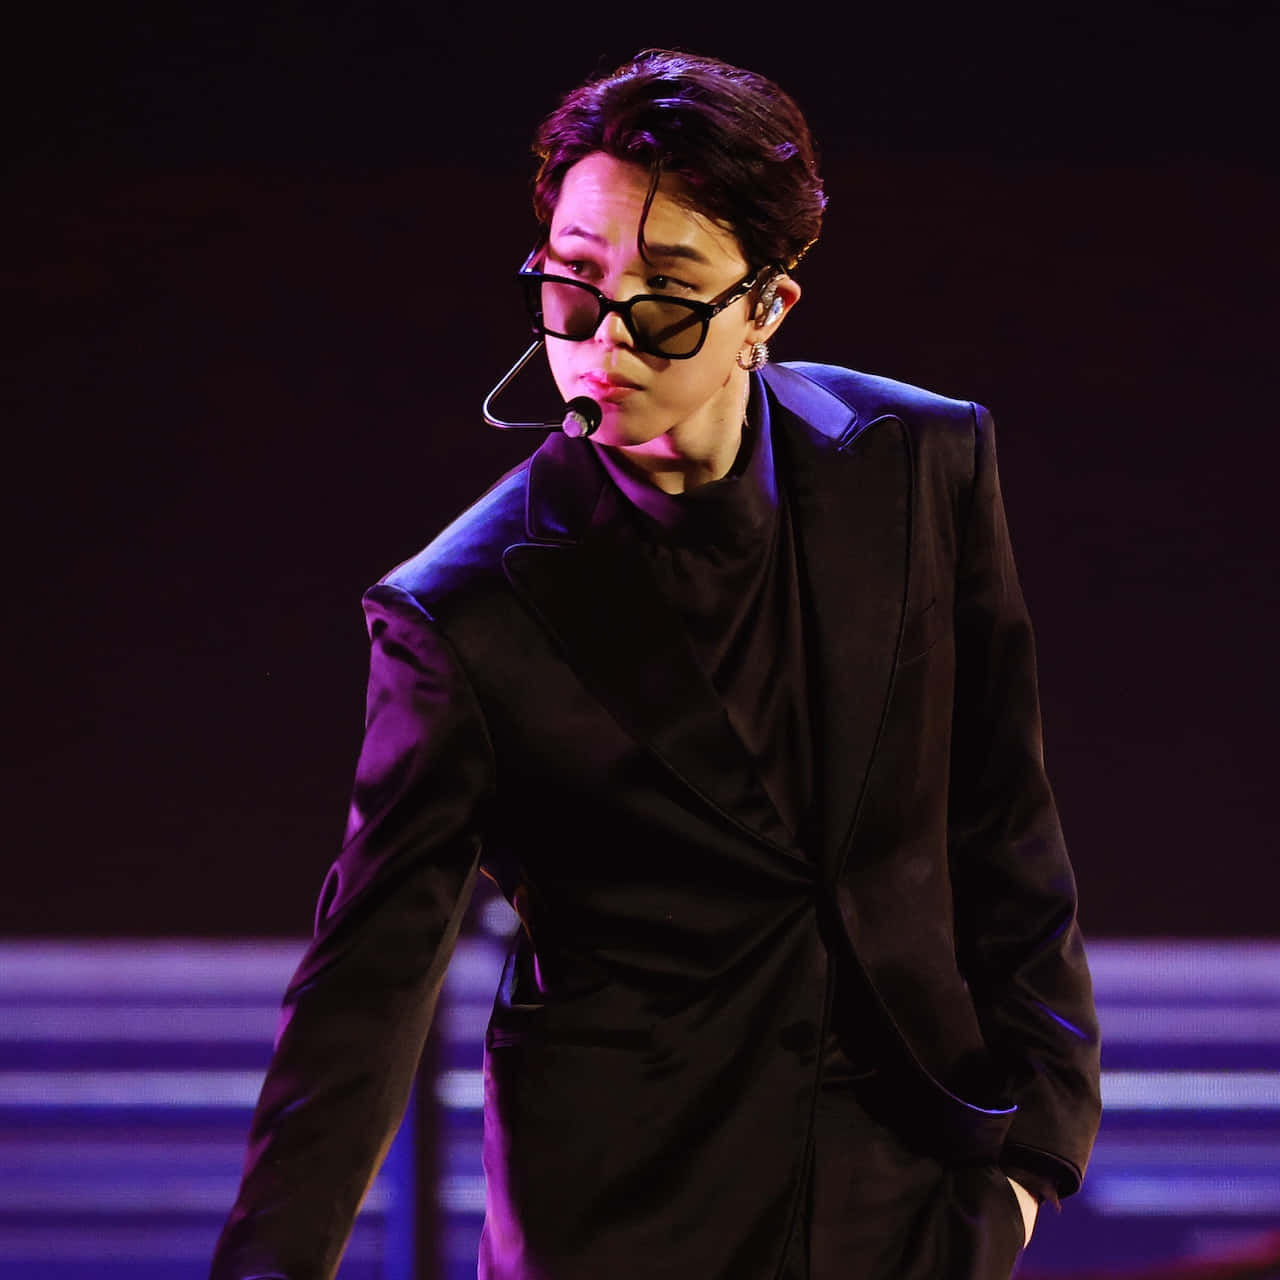 BTS's Jimin is Dressed in All Black in Return to Korea